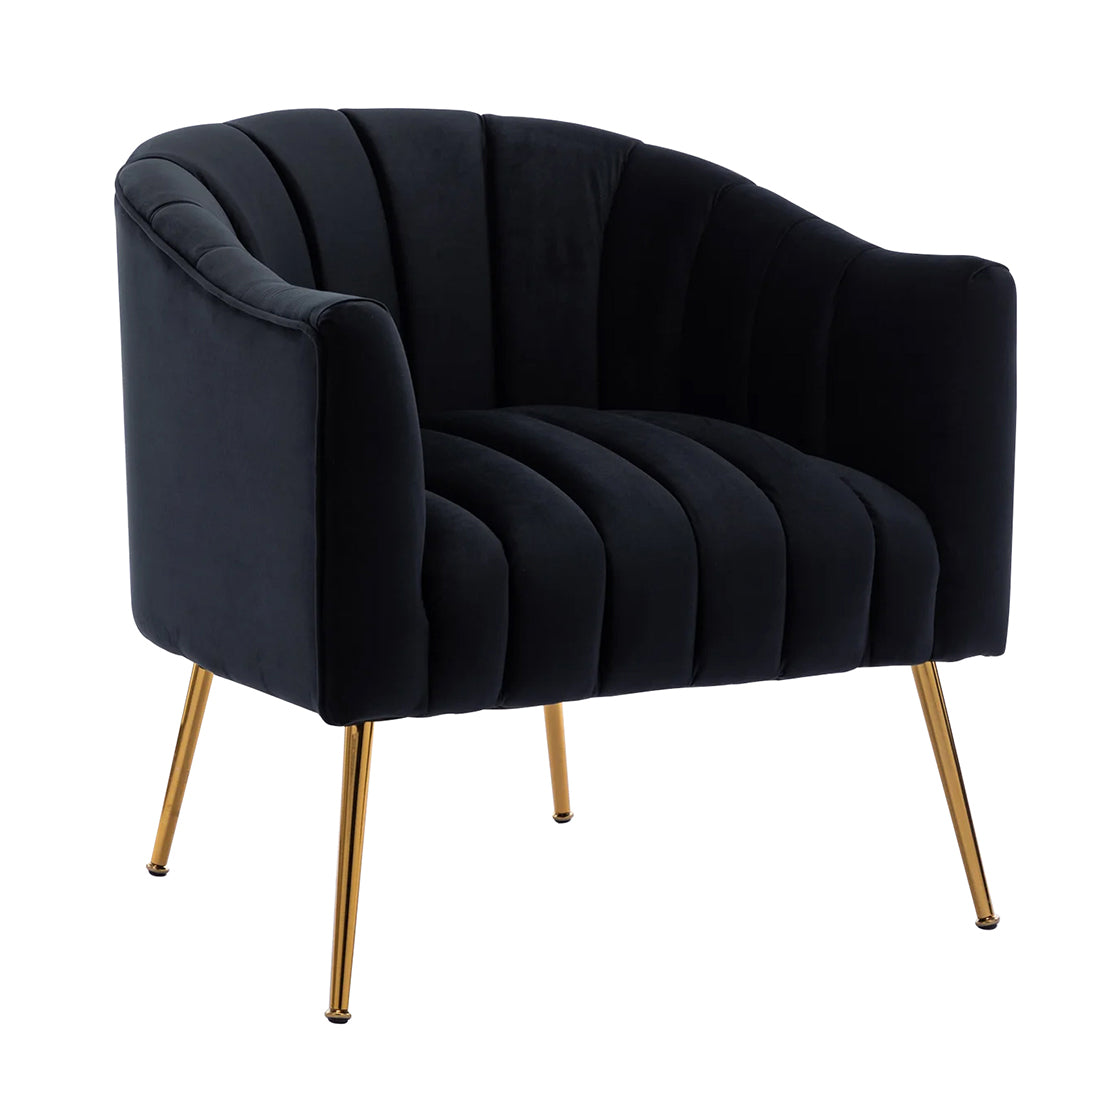 Vertical Channel Tufted Black Velvet Lounge Chair